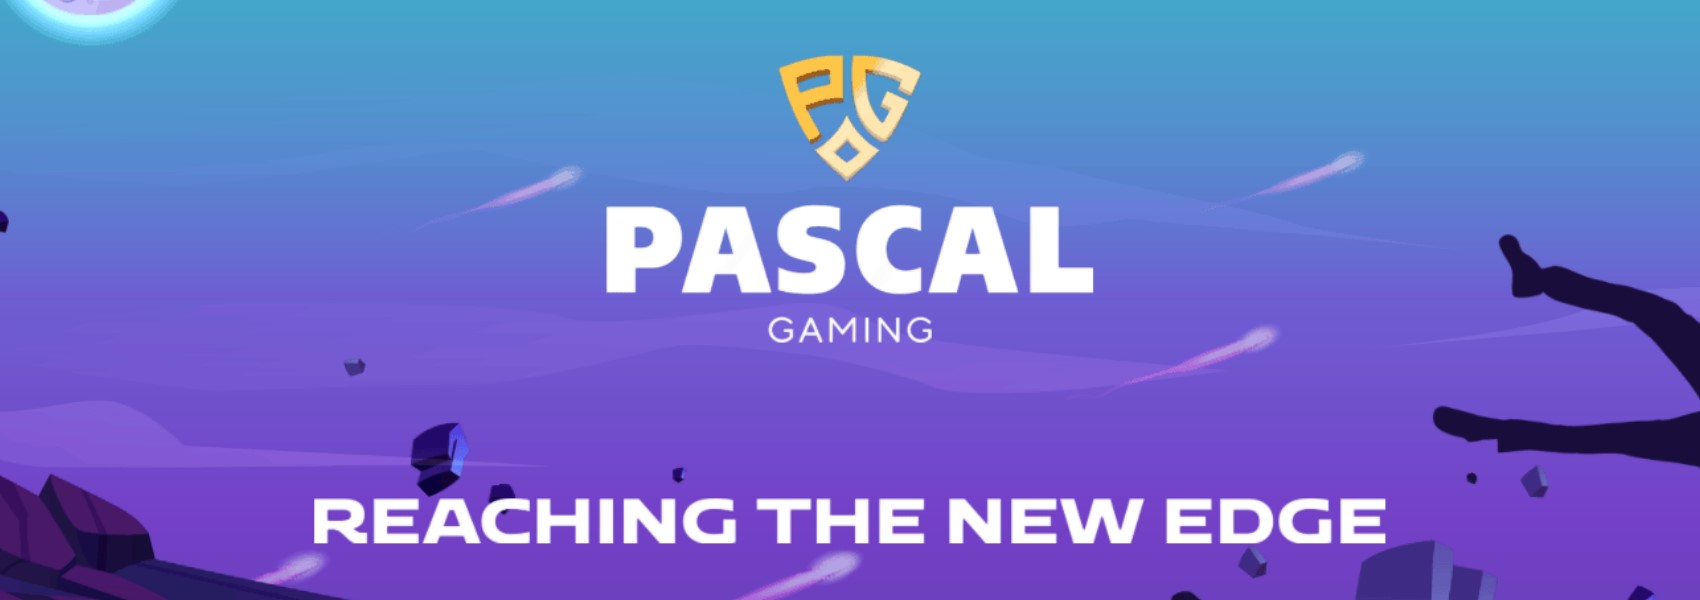 Pascal Gaming ゲームプロバイダー